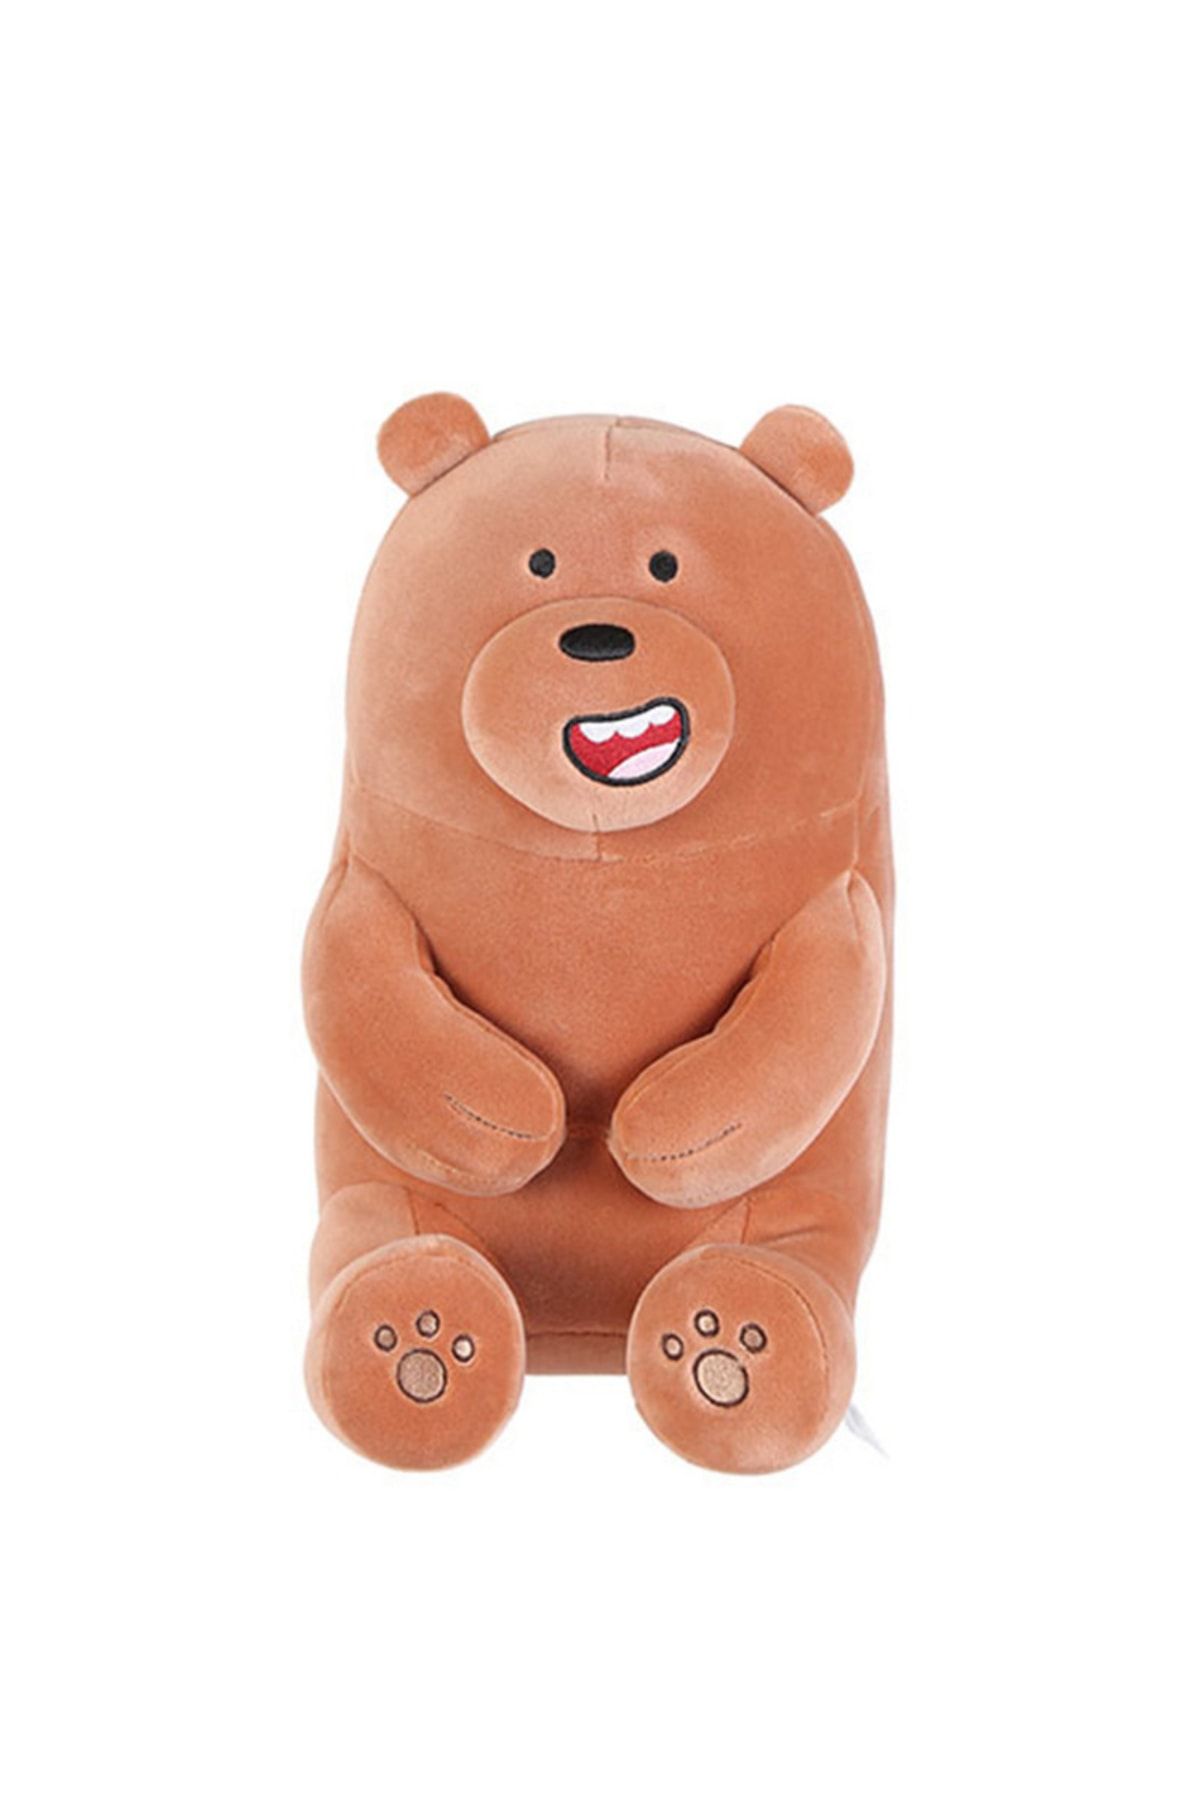 Miniso We Bare Bears Yumuşak Bebek- Grizzly 30 Cm